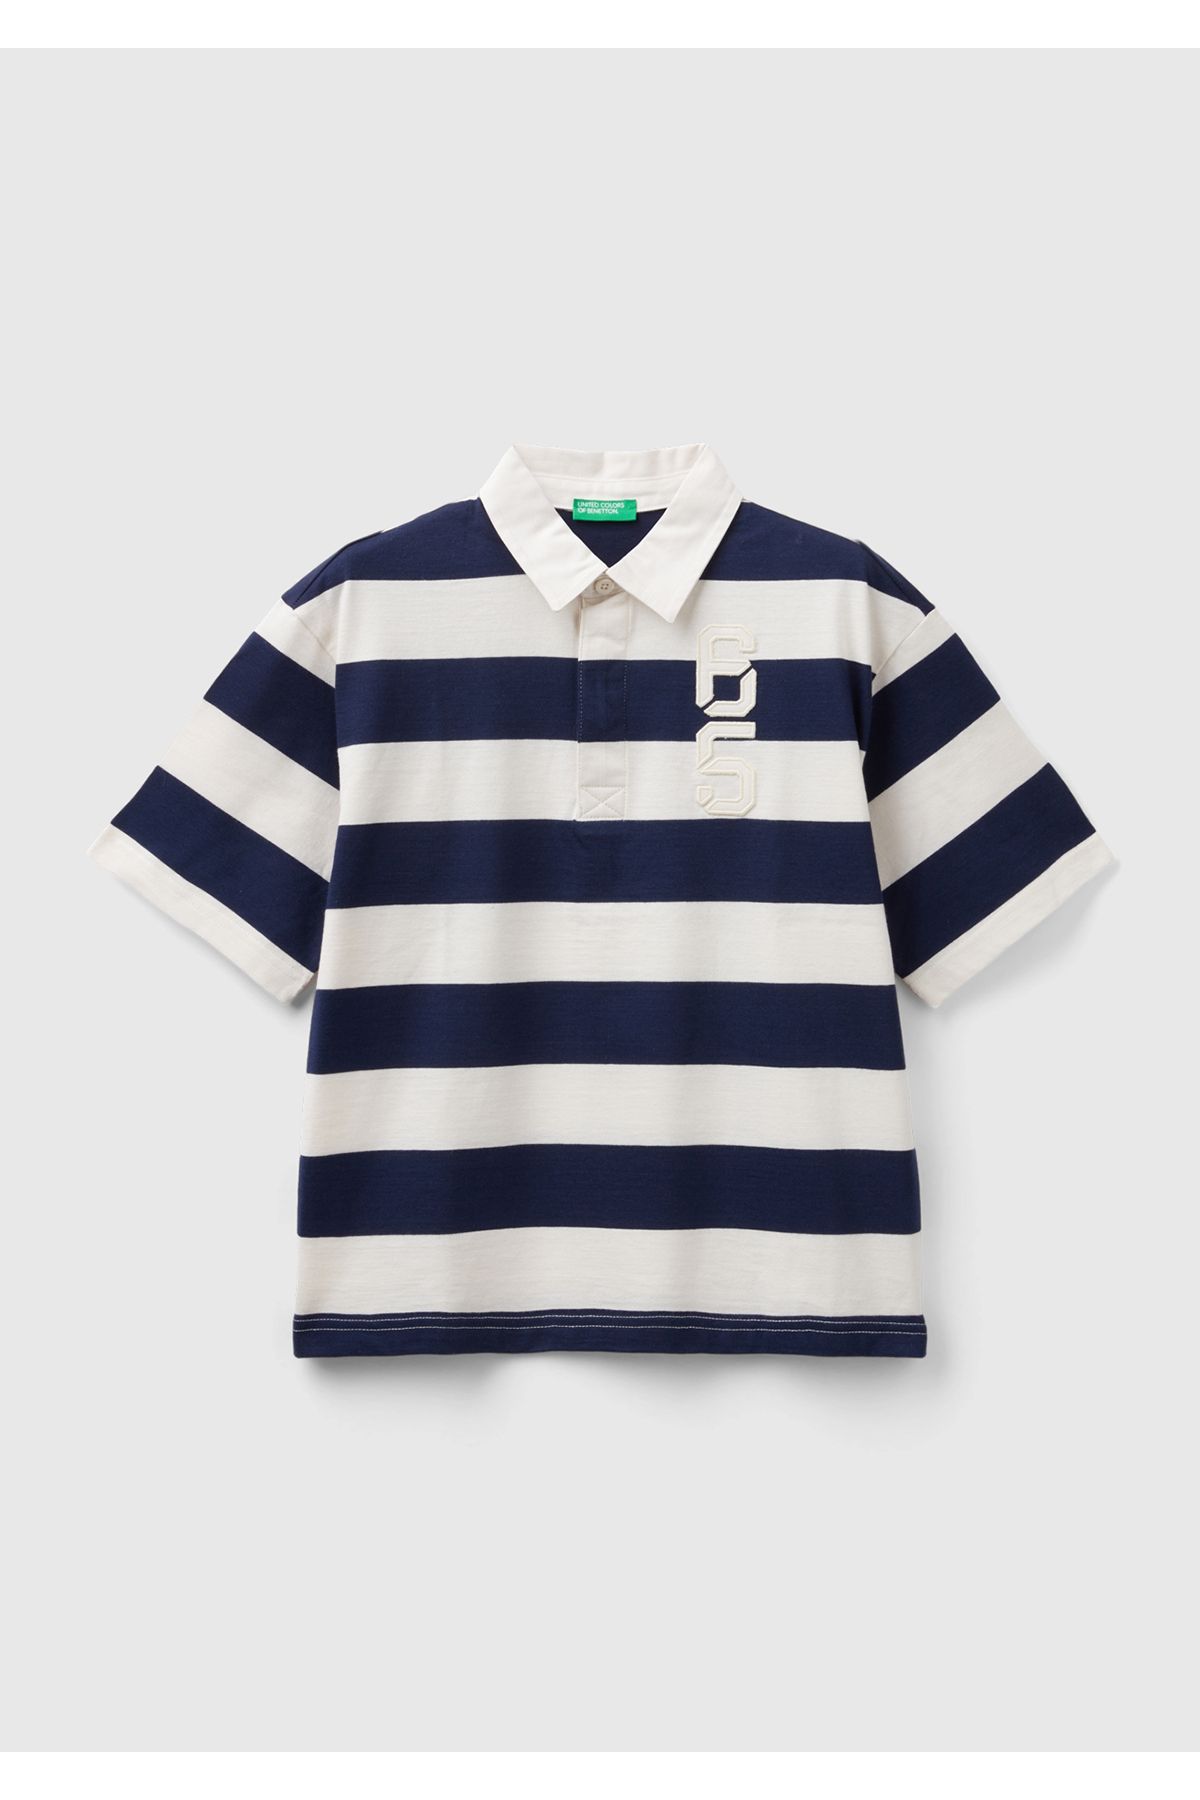 United Colors of Benetton Erkek Çocuk Lacivert-Beyaz Sol Göğsü ve Arkası İşlemeli Oversize Rugby Polo Tişört